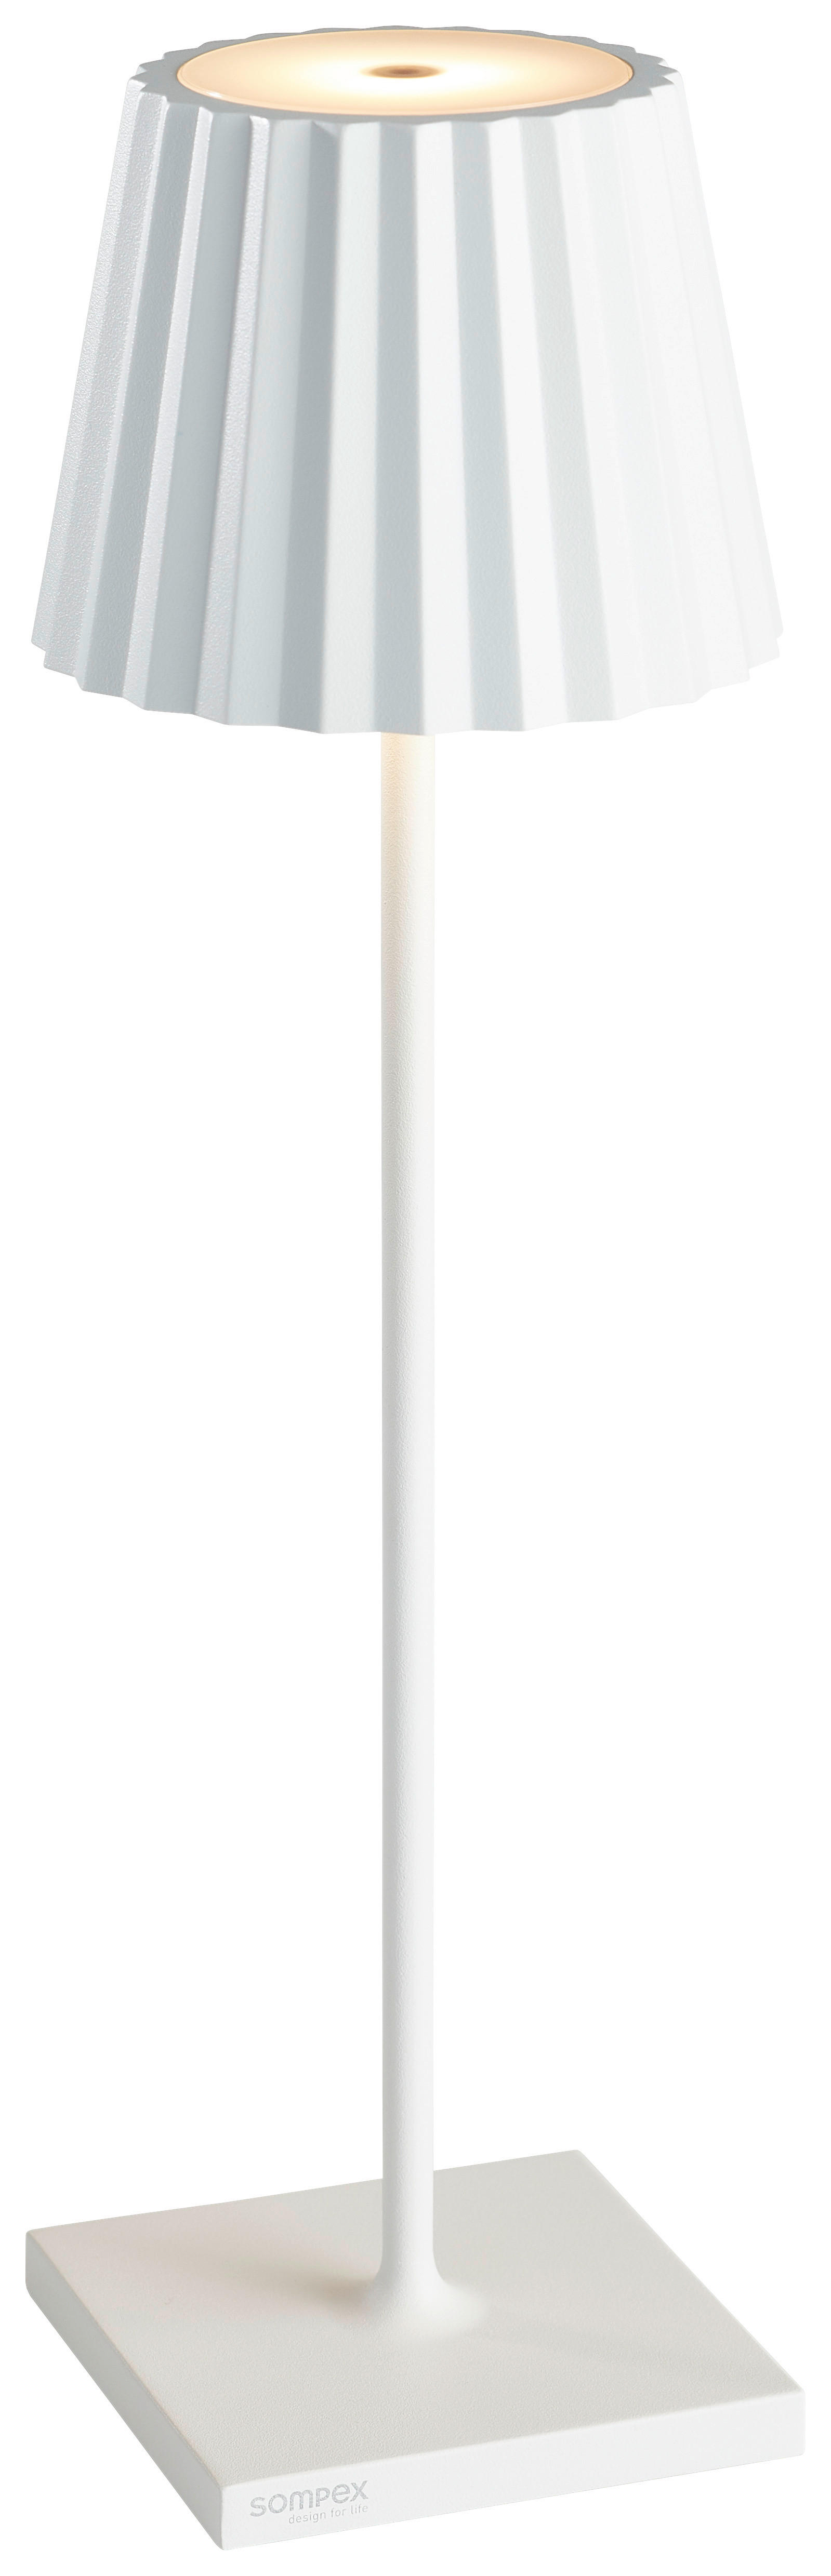 LED-TISCHLEUCHTE Troll  - Weiß, Design, Metall (11/38cm) - Sompex